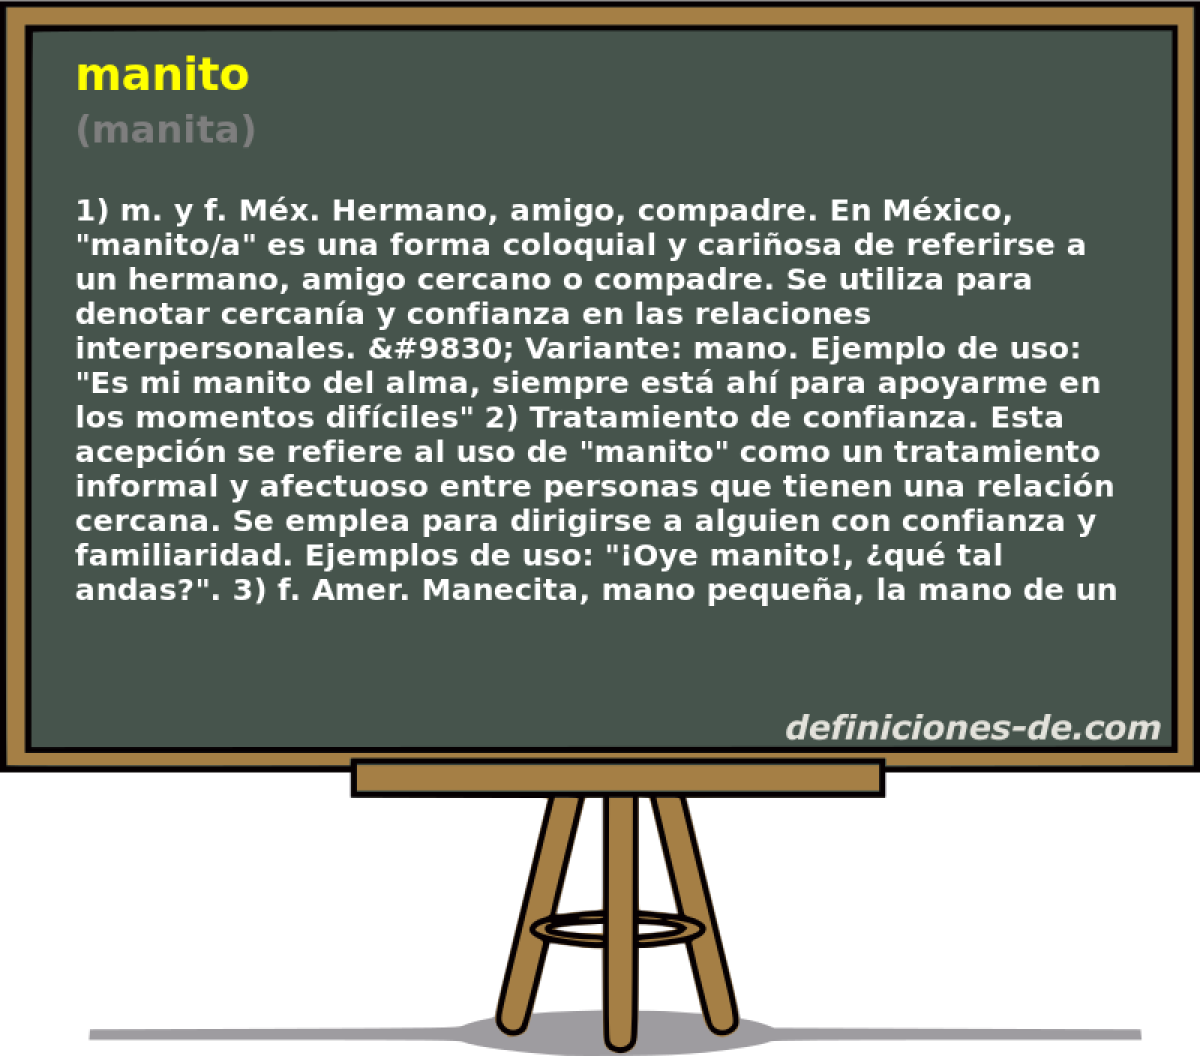 manito (manita)